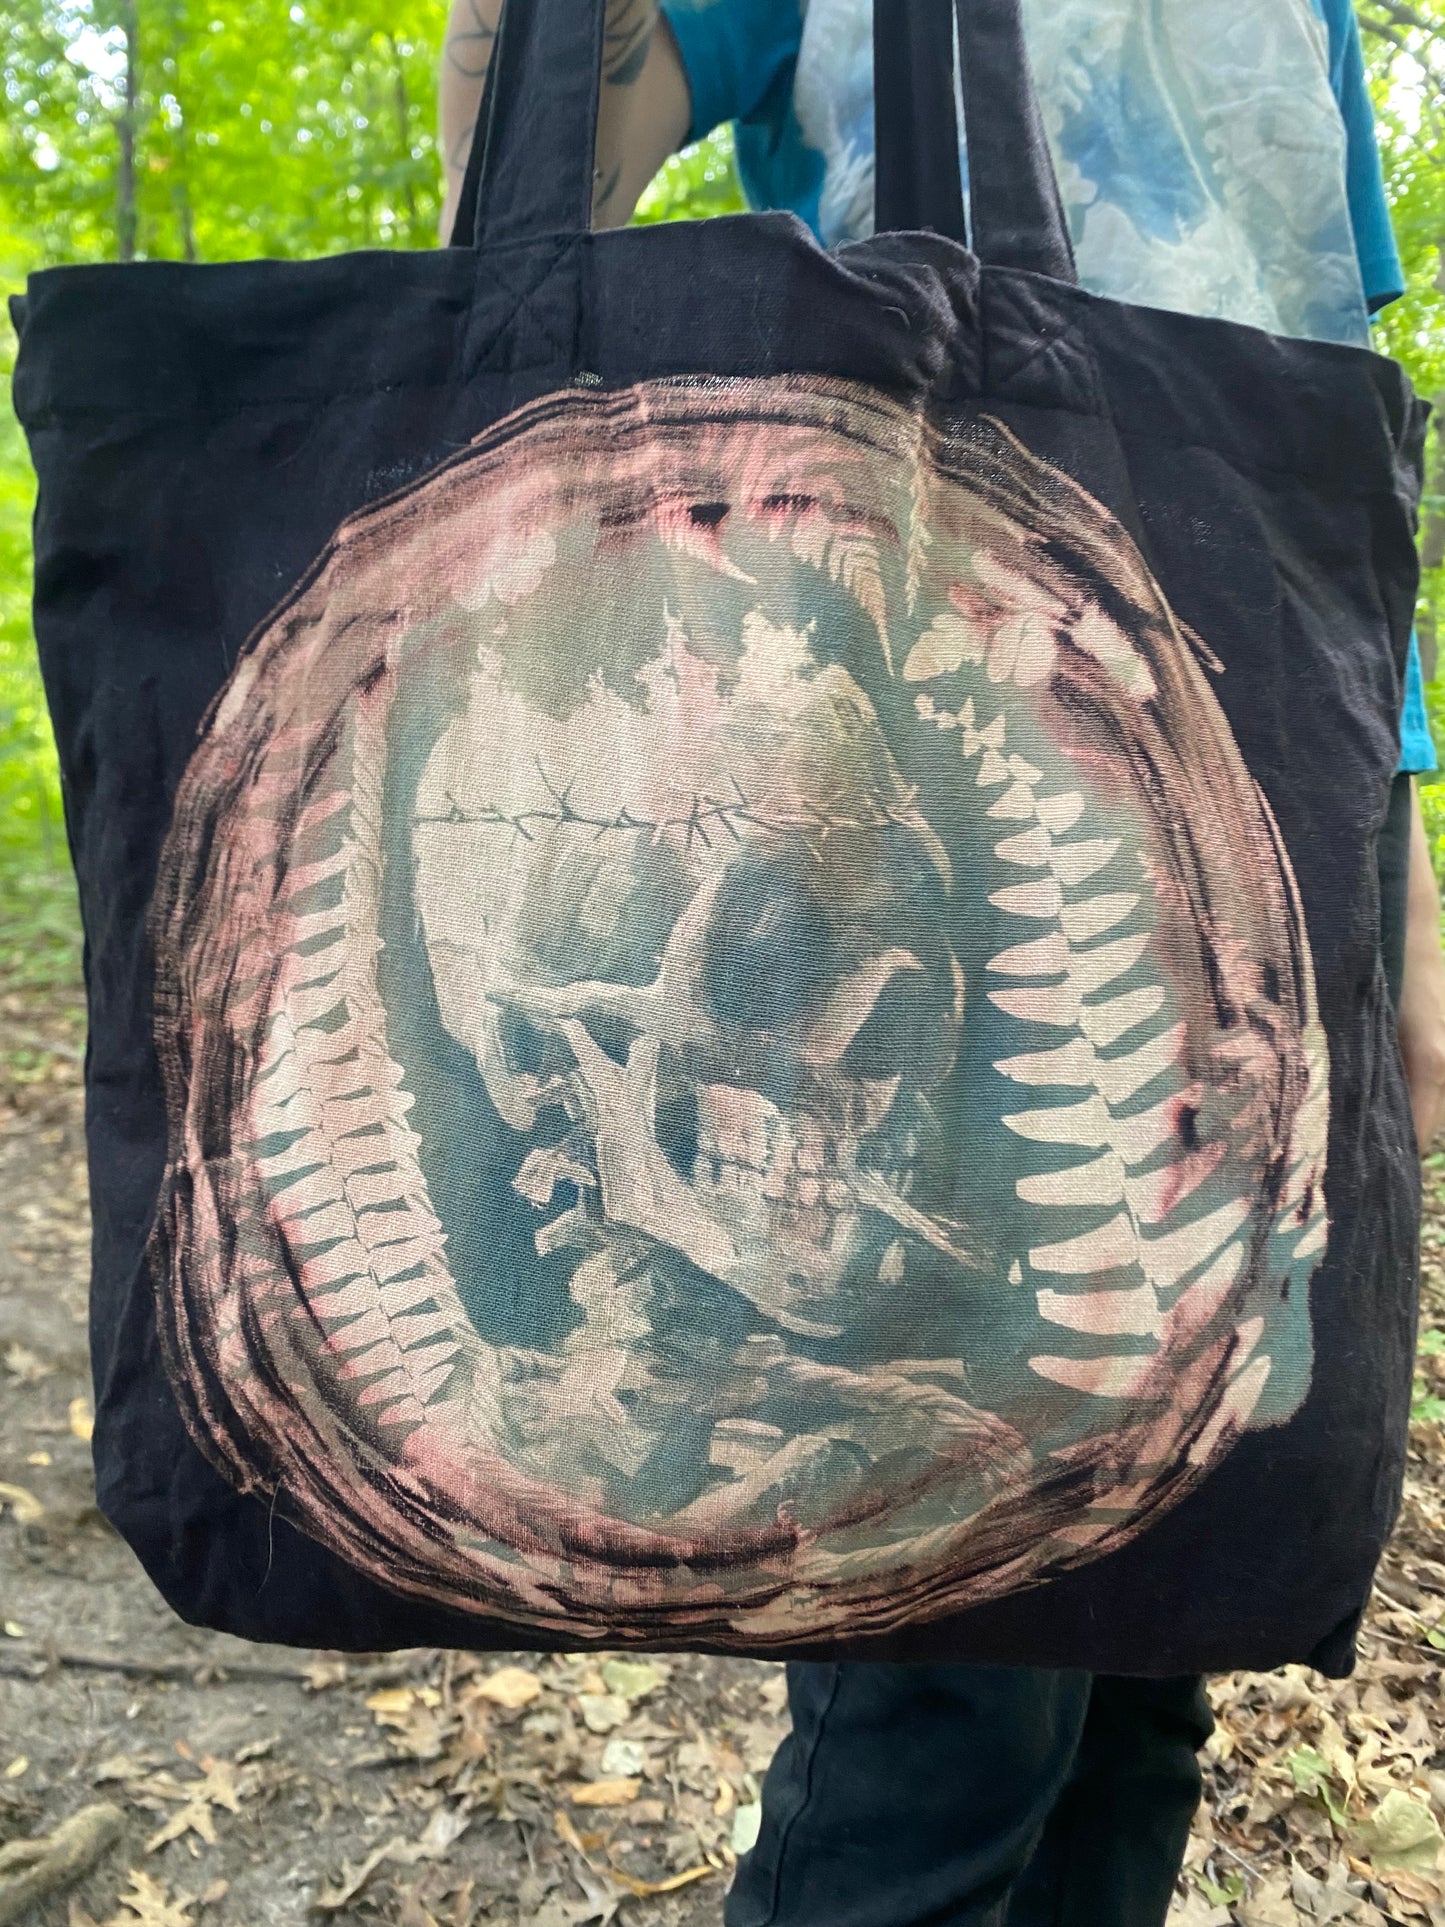 Black Bleached Cyanotype skull tote bag